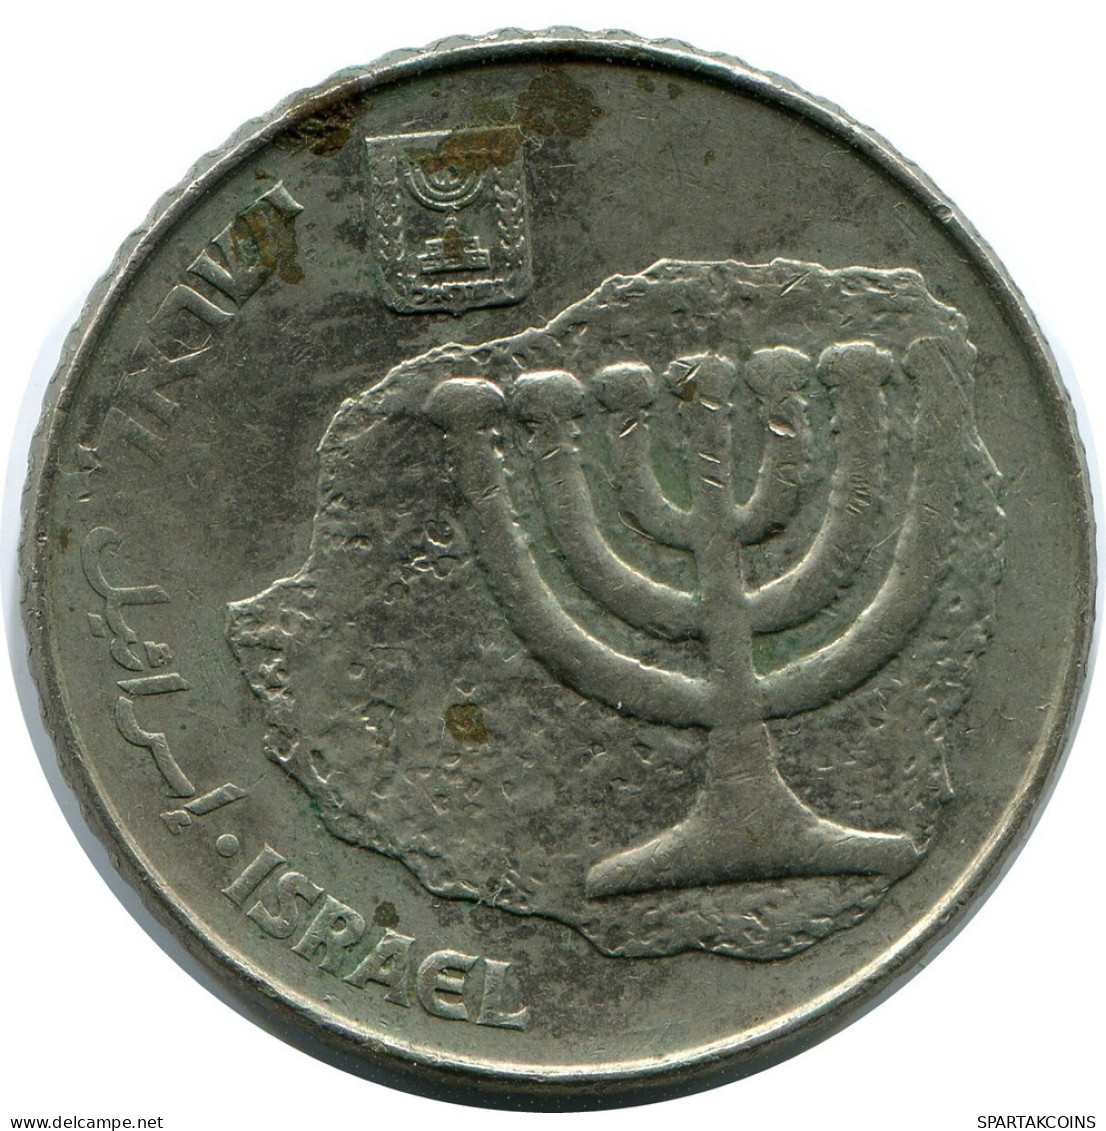 100 SHEQALIM 1985 ISRAEL Moneda #AR054.E.A - Israel